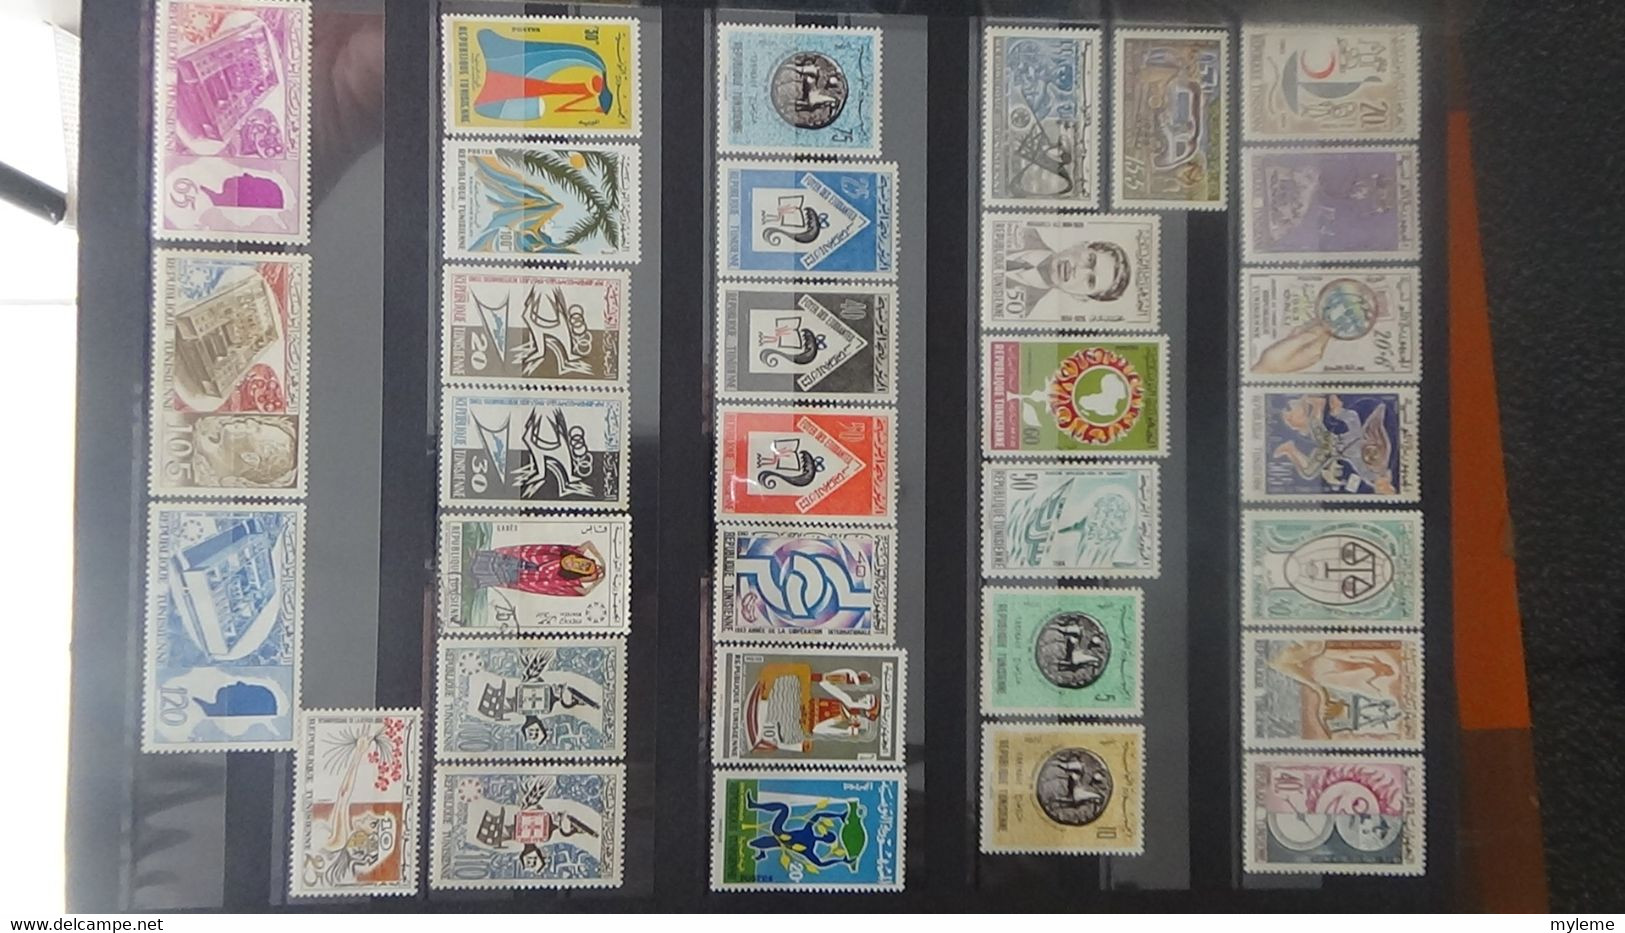 AD50 Bel ensemble de timbres  **, *, NSG et oblitérés de différents pays d'Afrique...  A saisir !!!